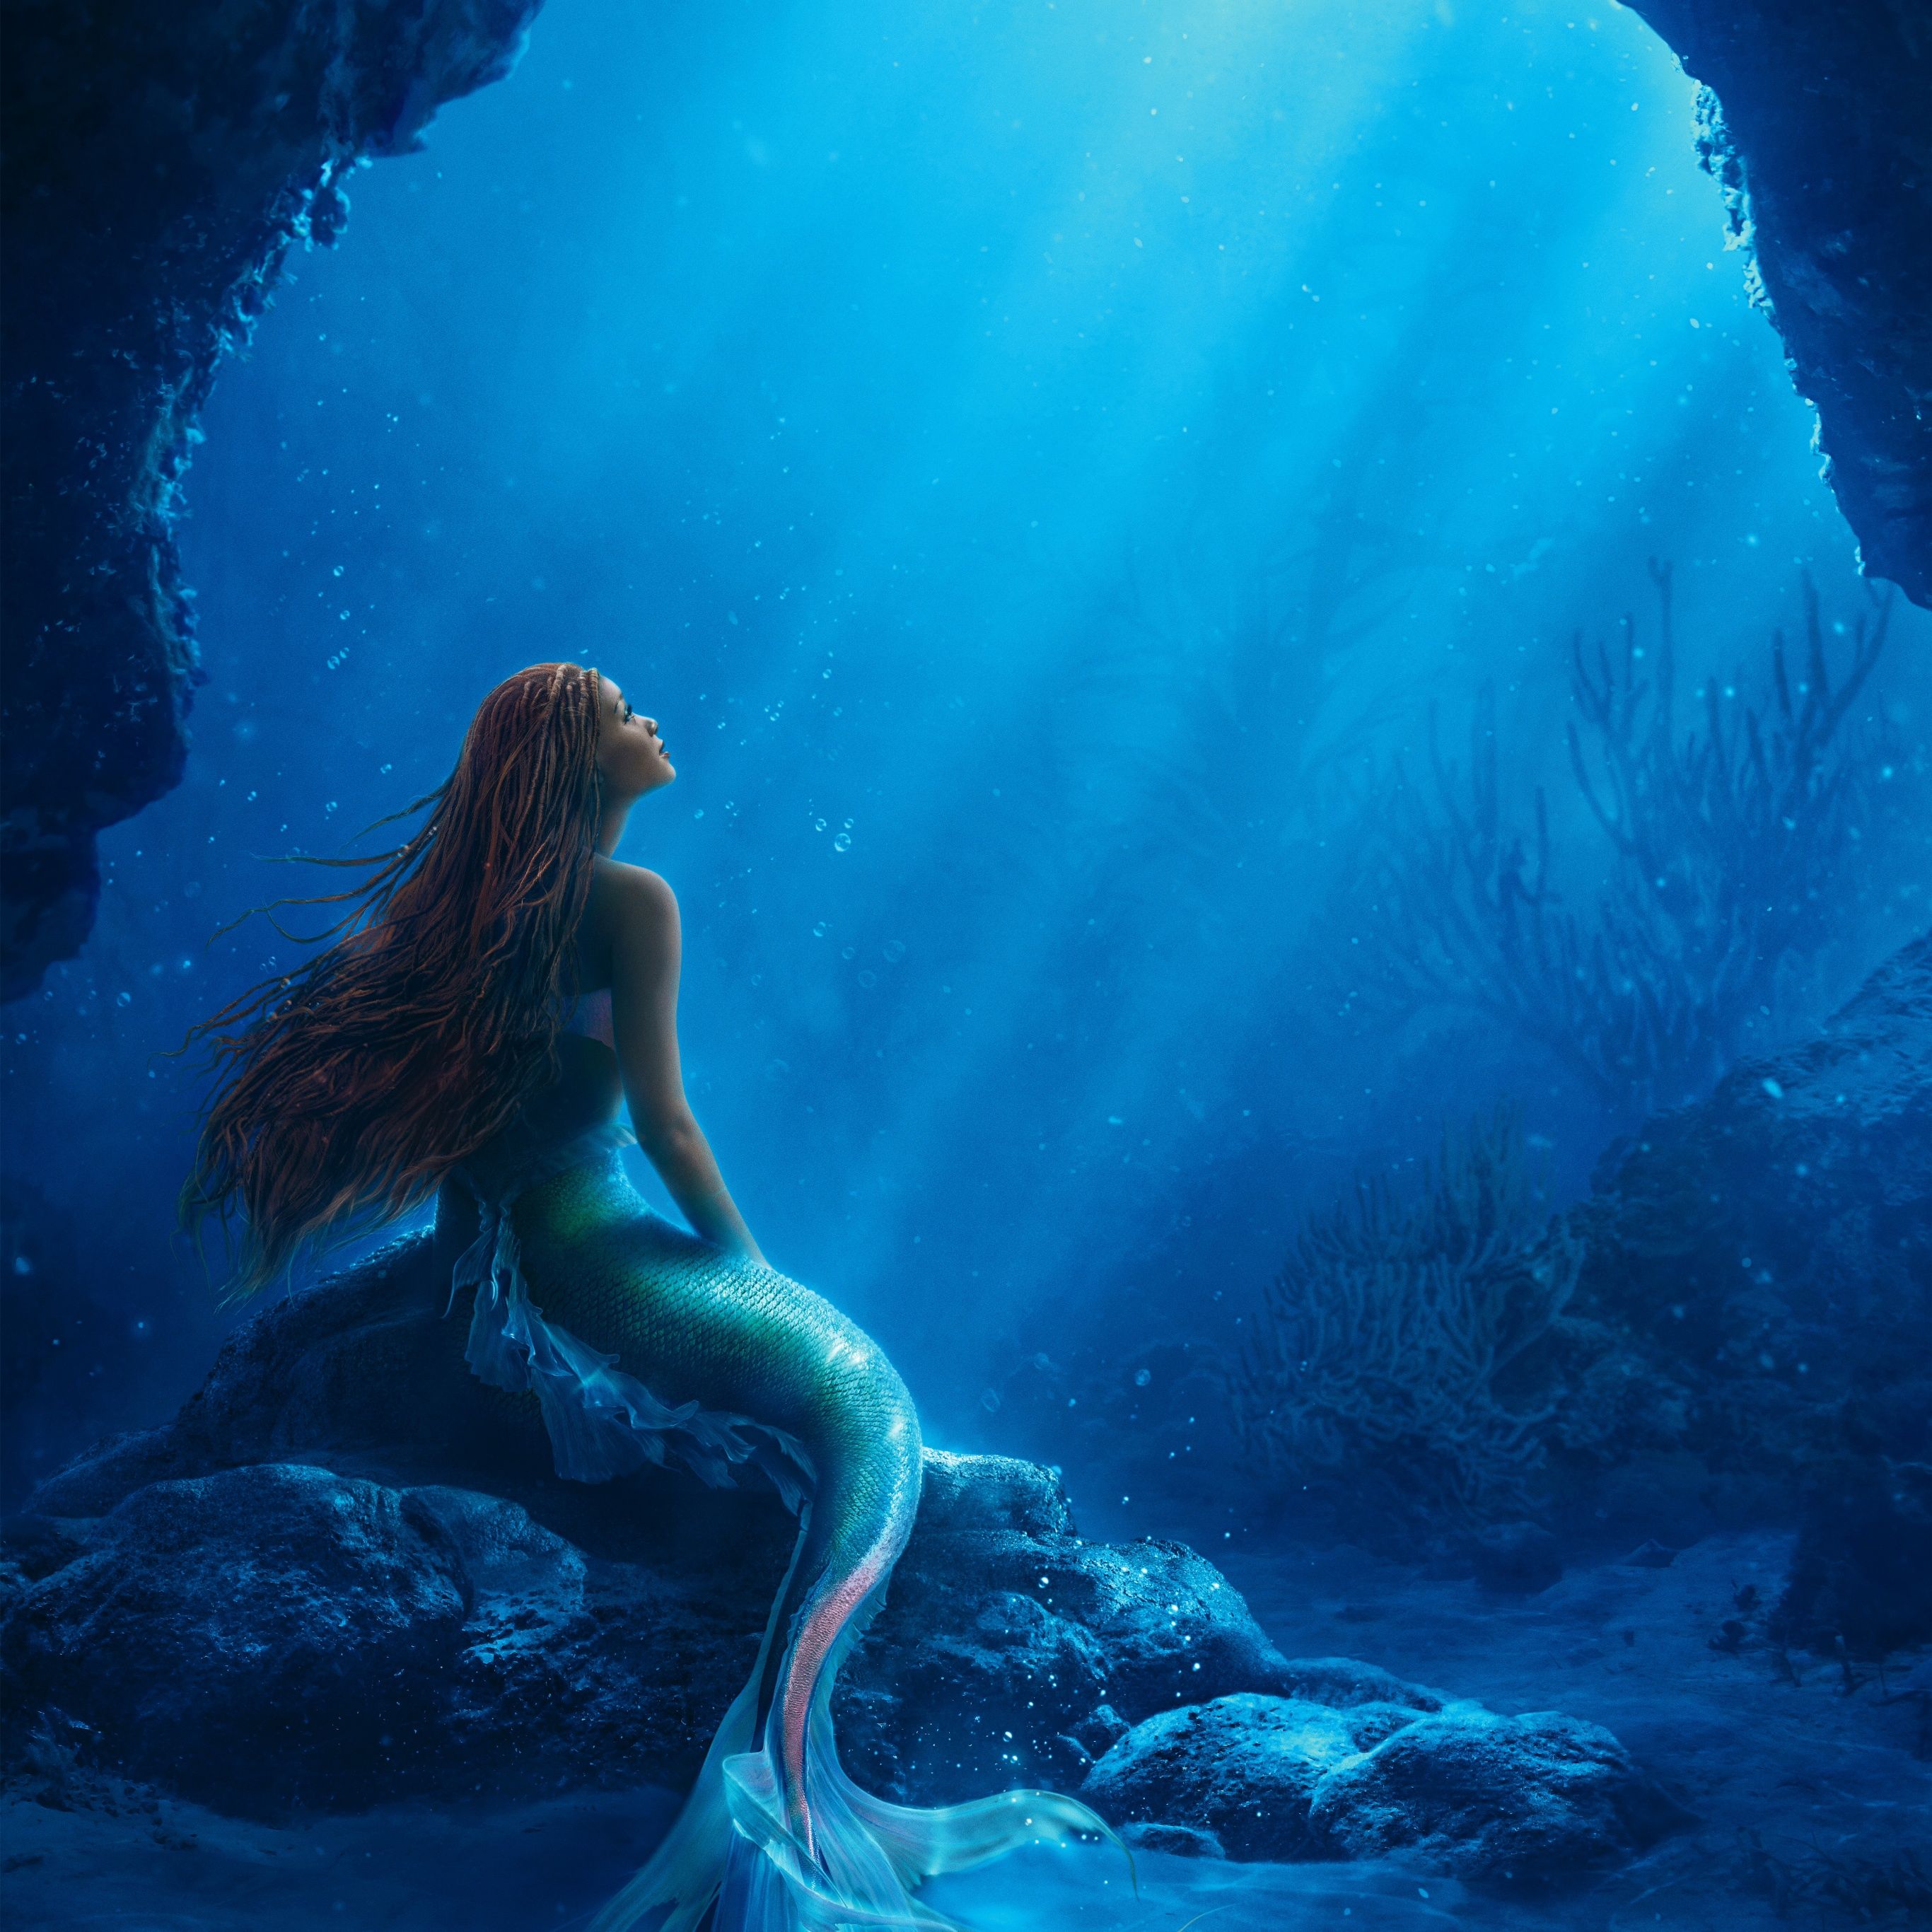 A mermaid sitting in the ocean with her hair flowing - Mermaid